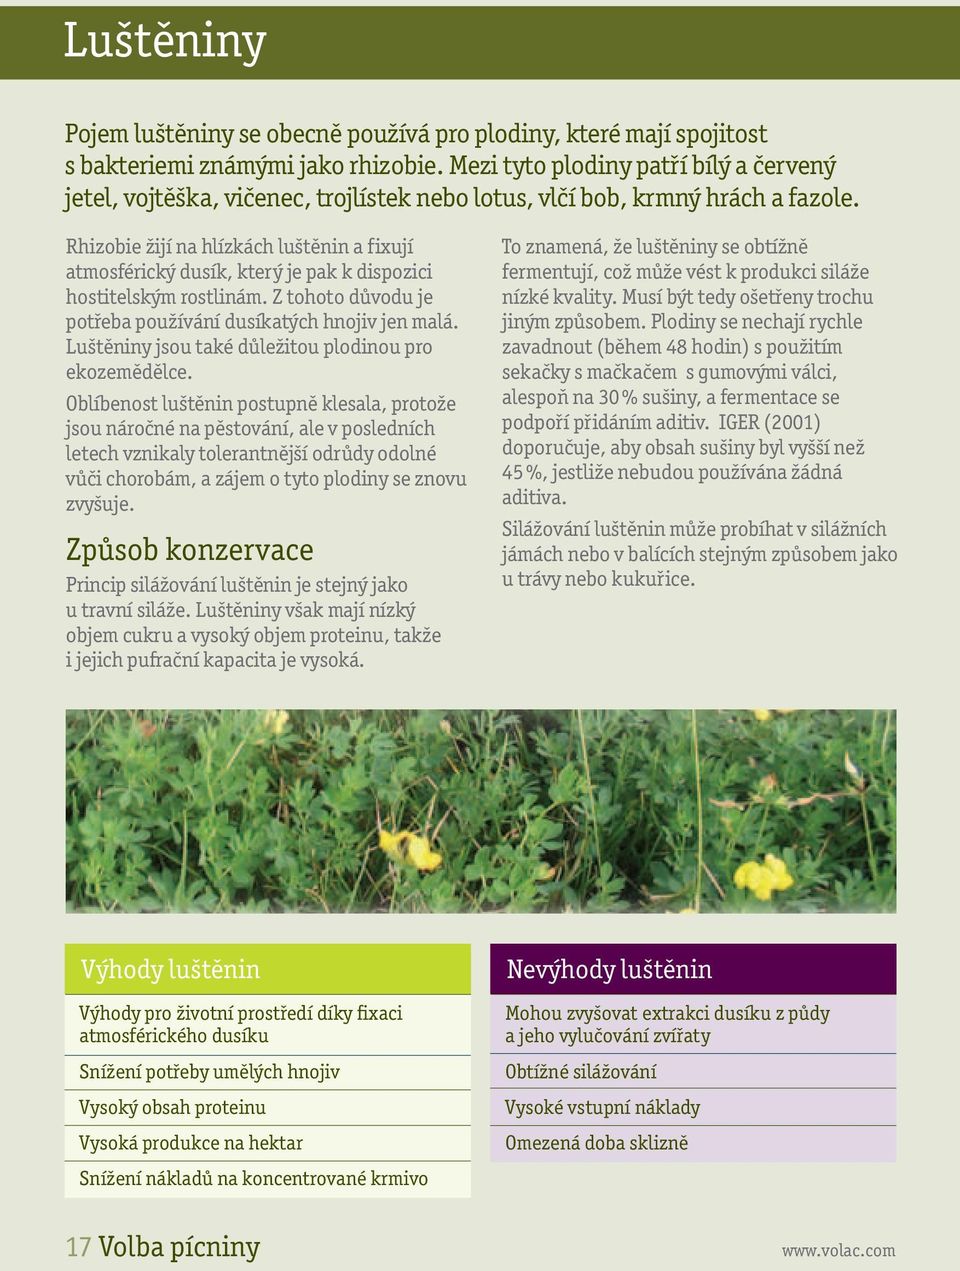 Rhizobie žijí na hlízkách luštěnin a fixují atmosférický dusík, který je pak k dispozici hostitelským rostlinám. Z tohoto důvodu je potřeba používání dusíkatých hnojiv jen malá.